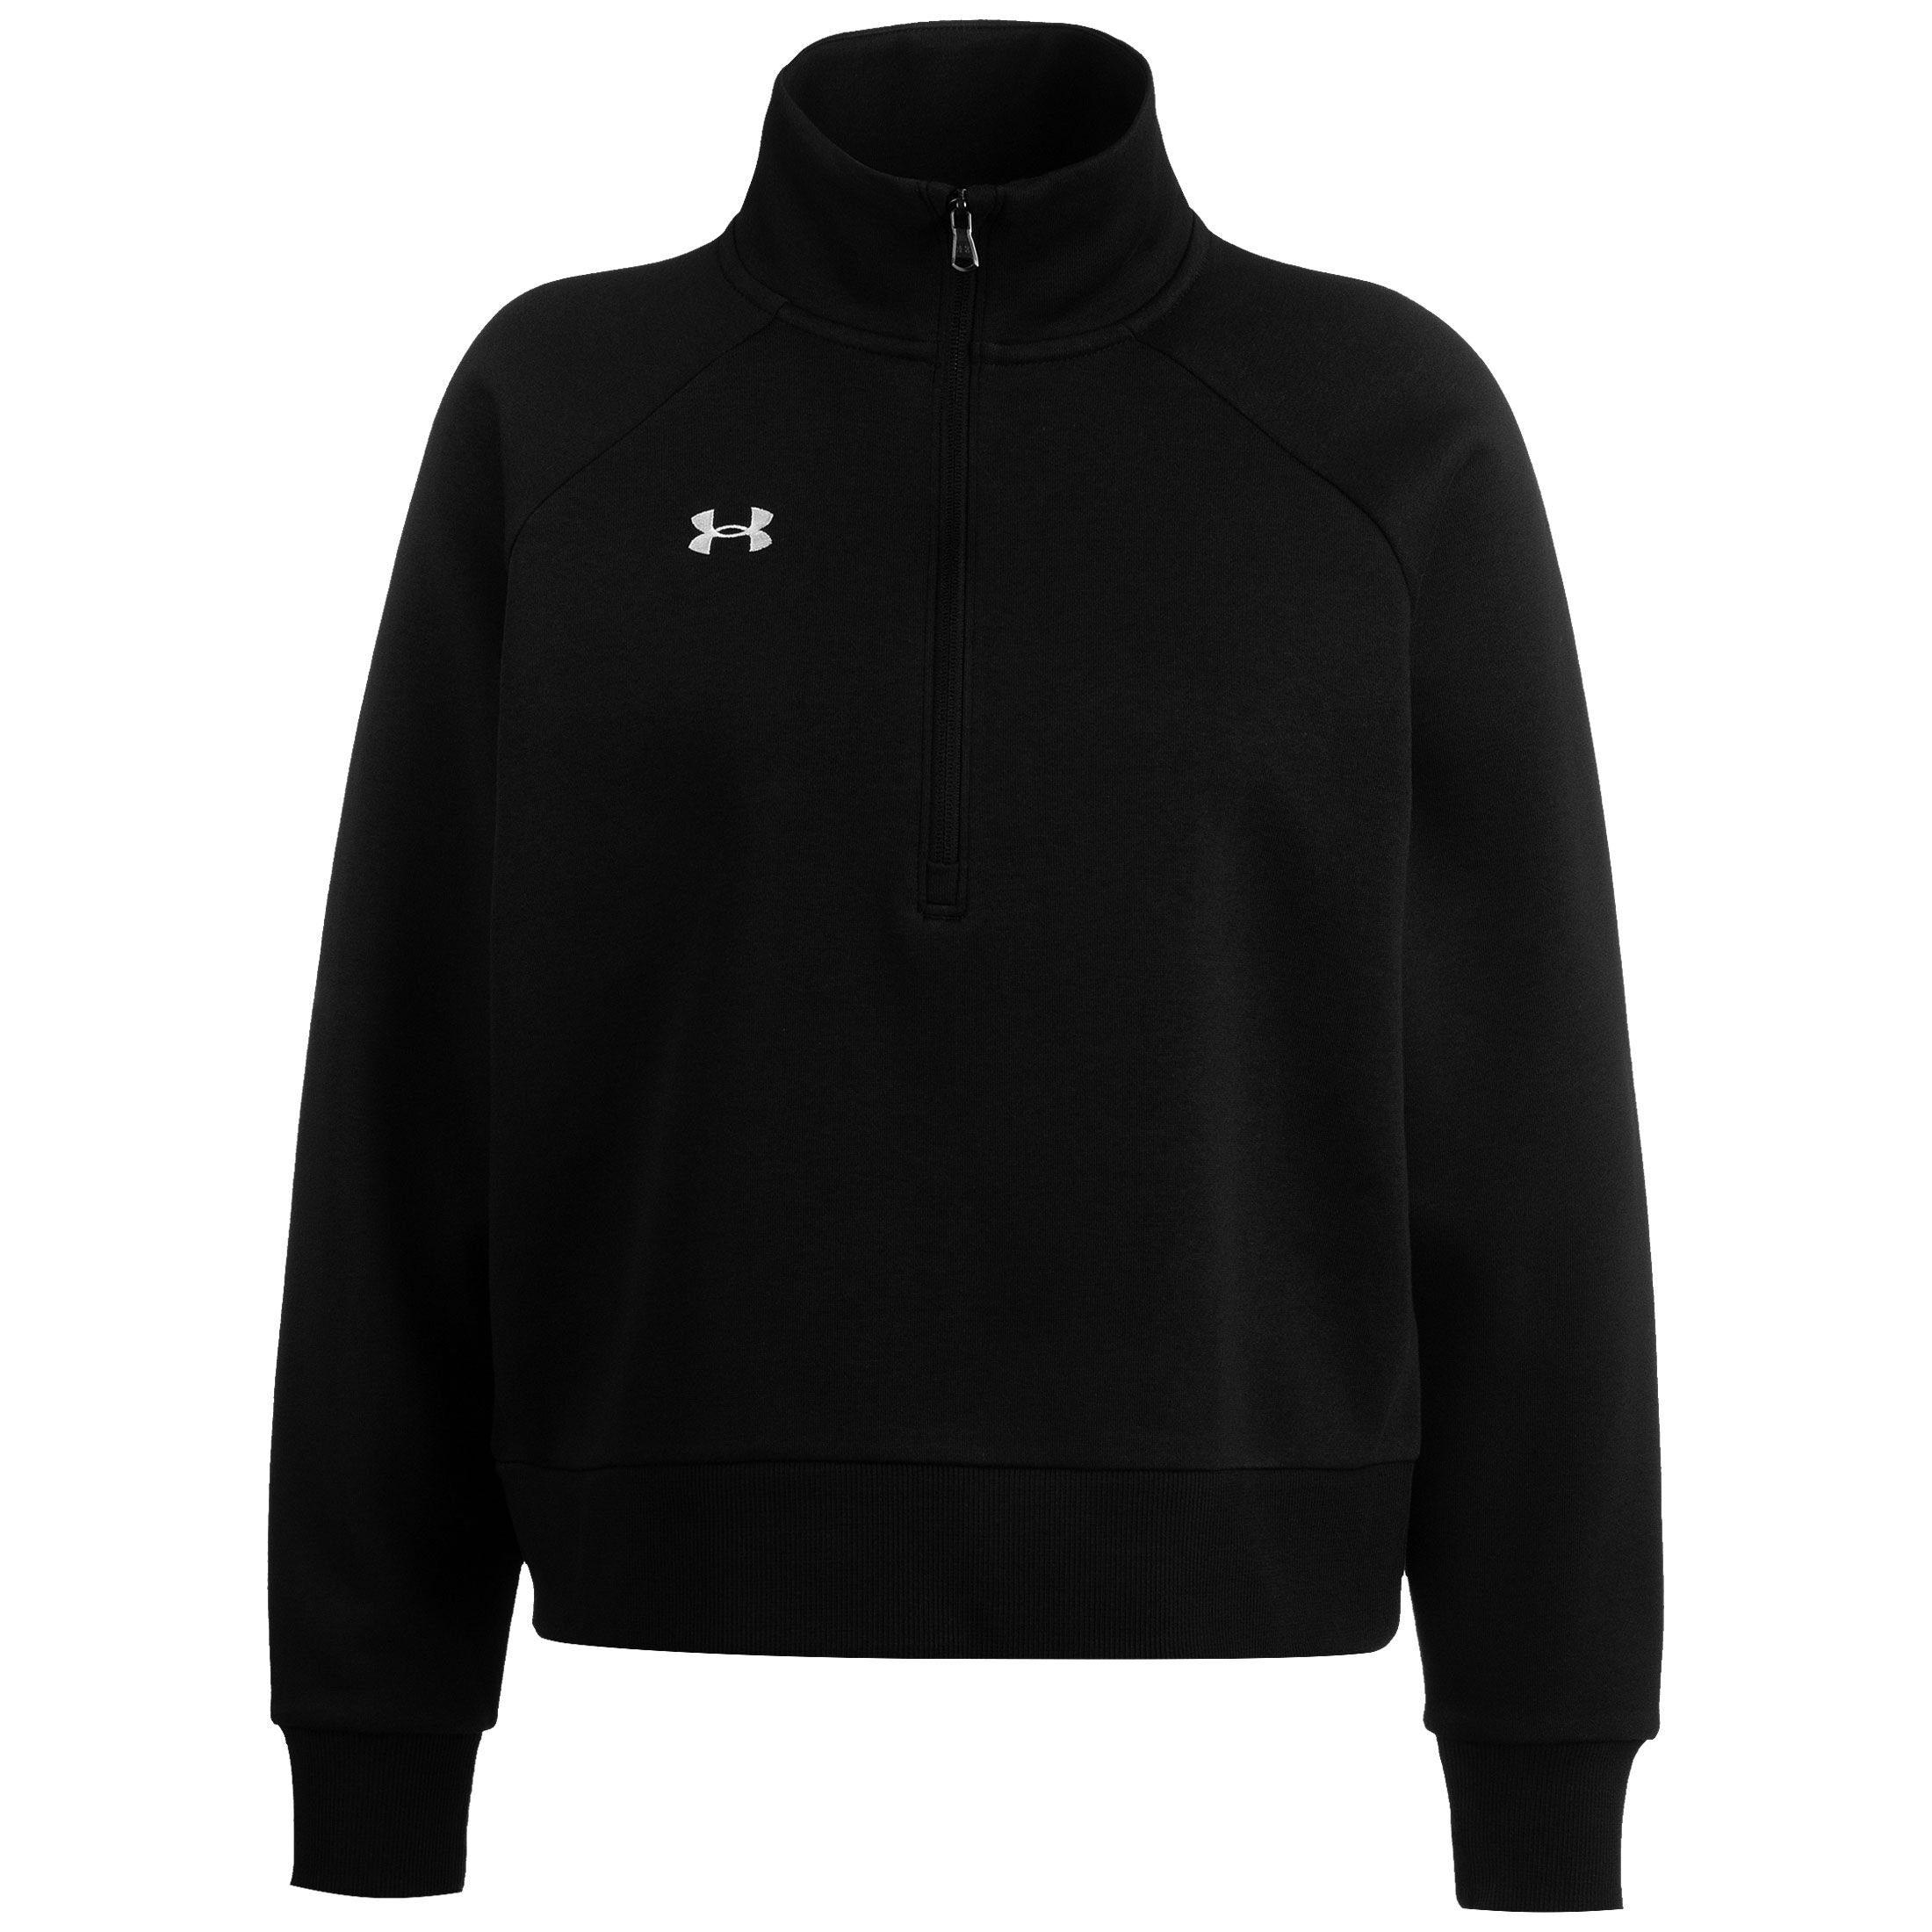 Fleece Sweatshirt Rival 1/2 Damen Under Armour® schwarz Sweatshirt Zip